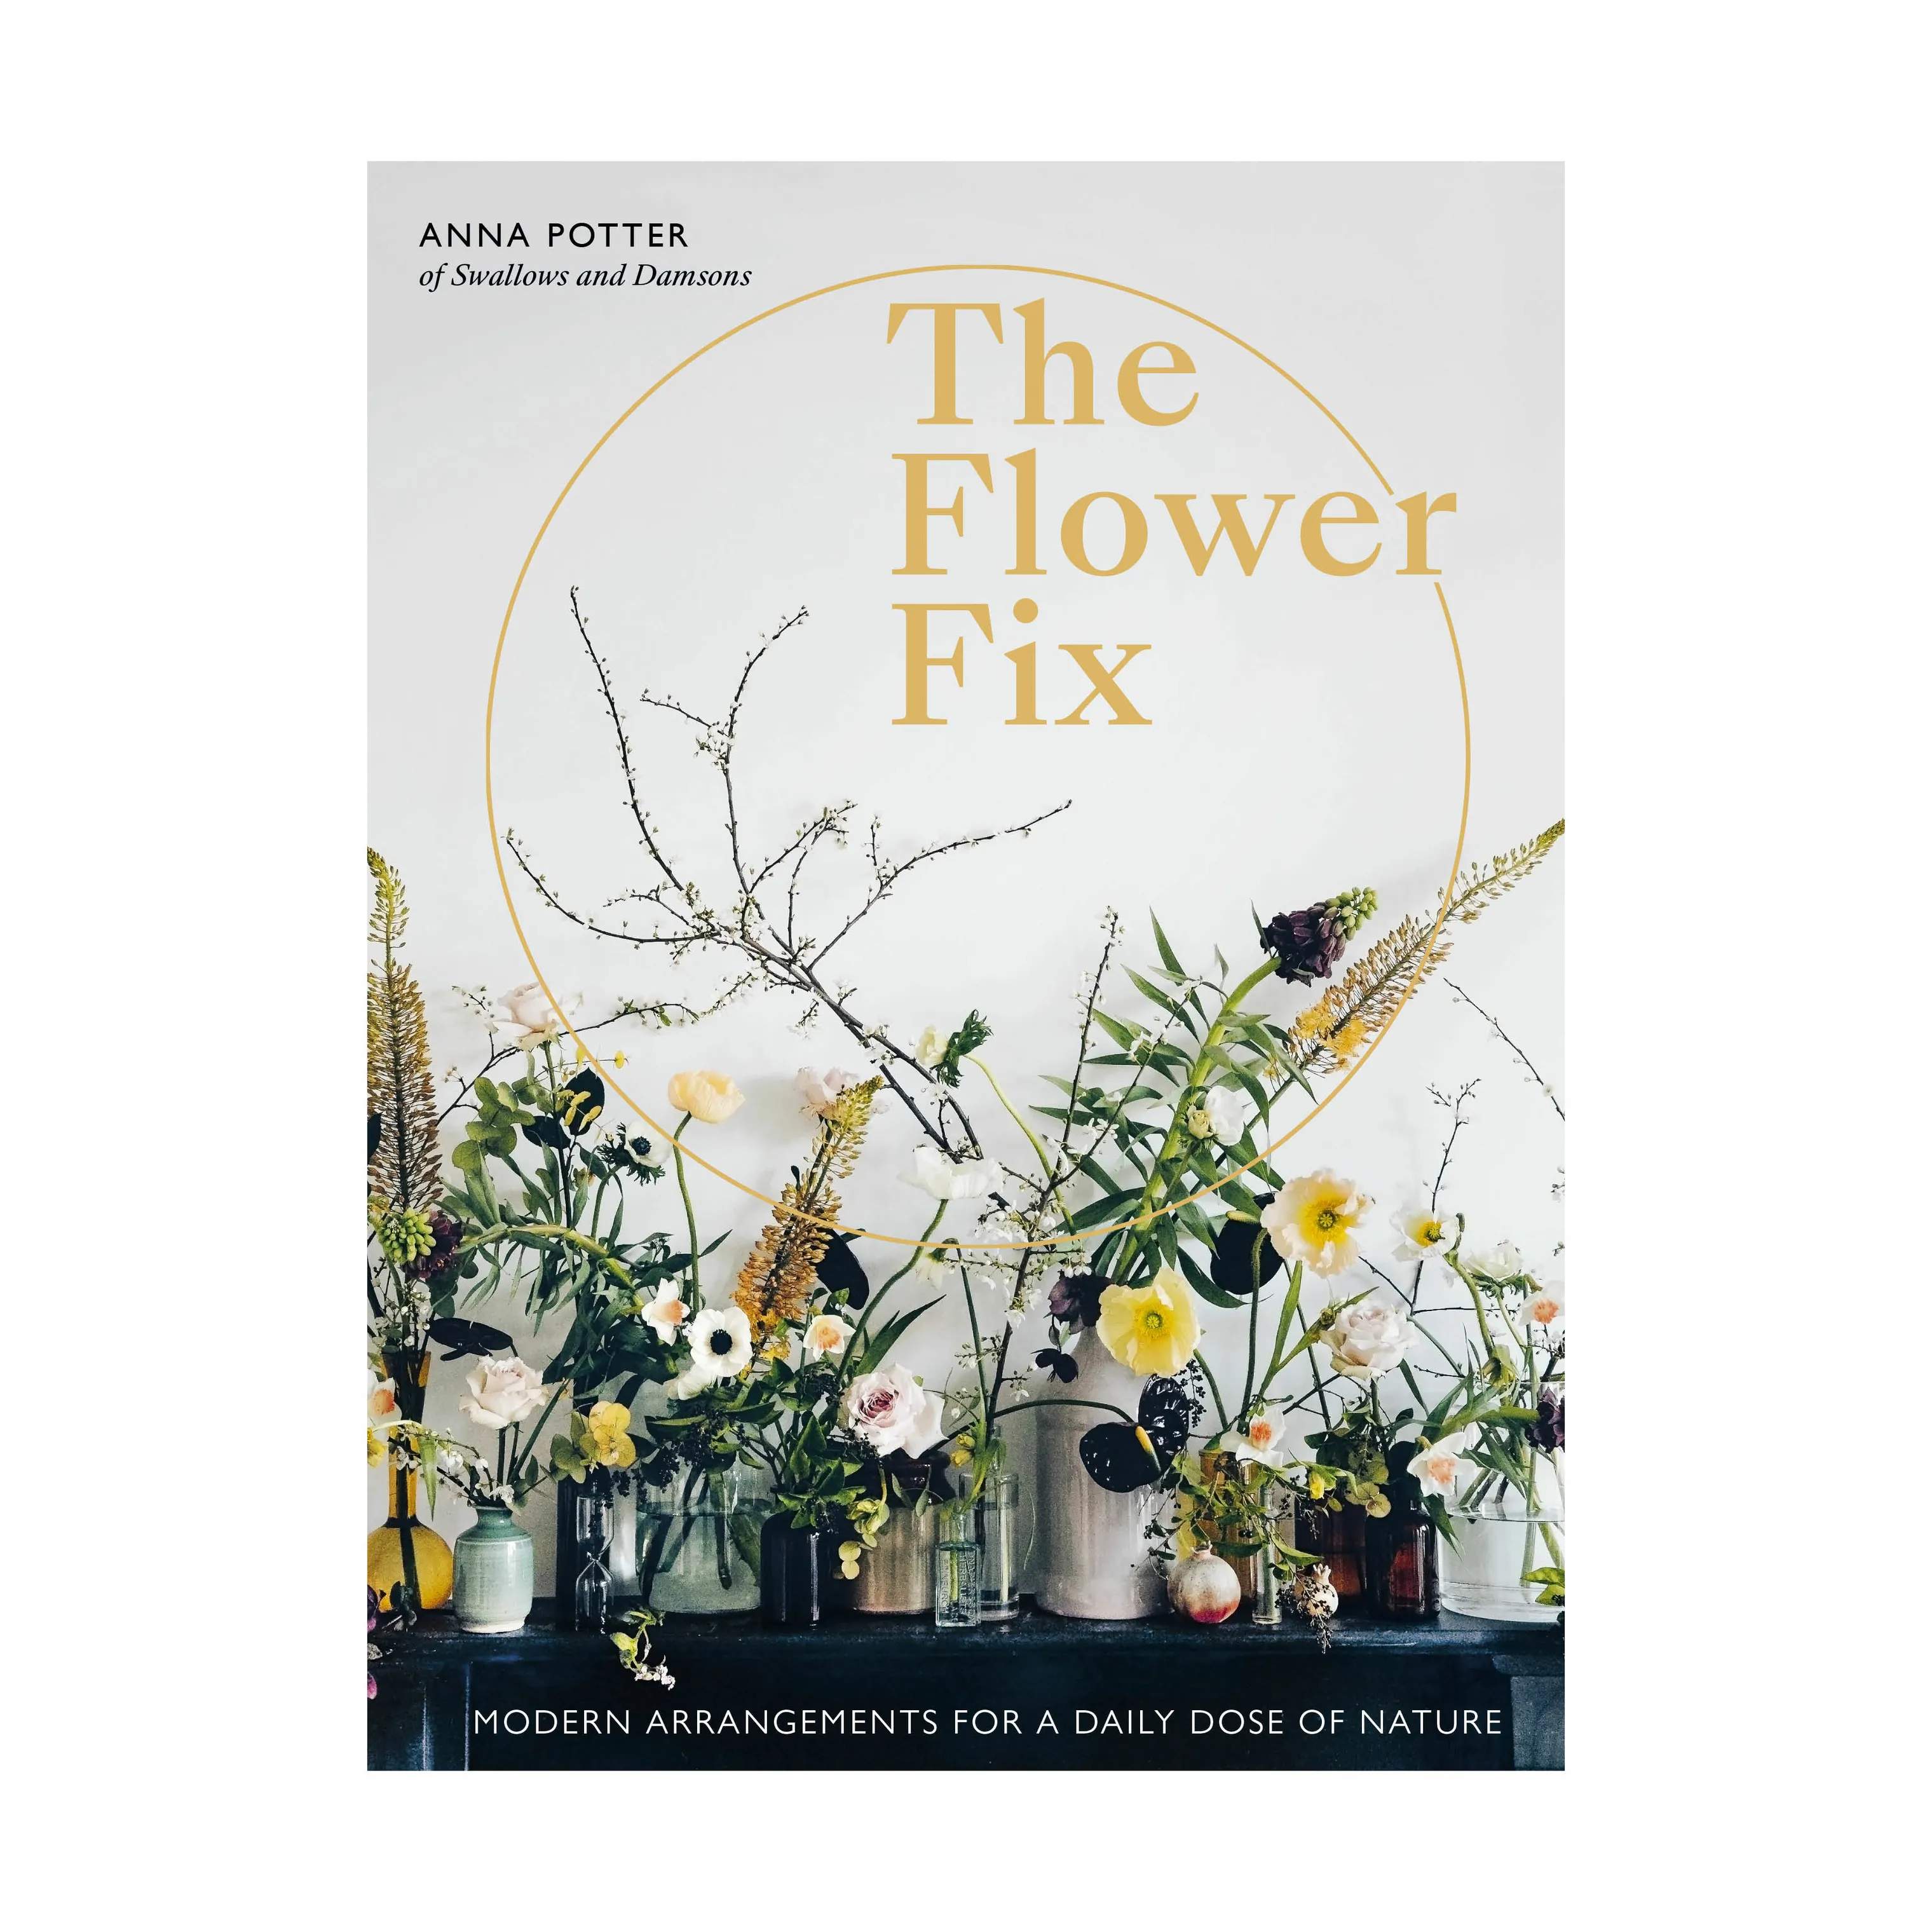 The Flower Fix øvrige bøger